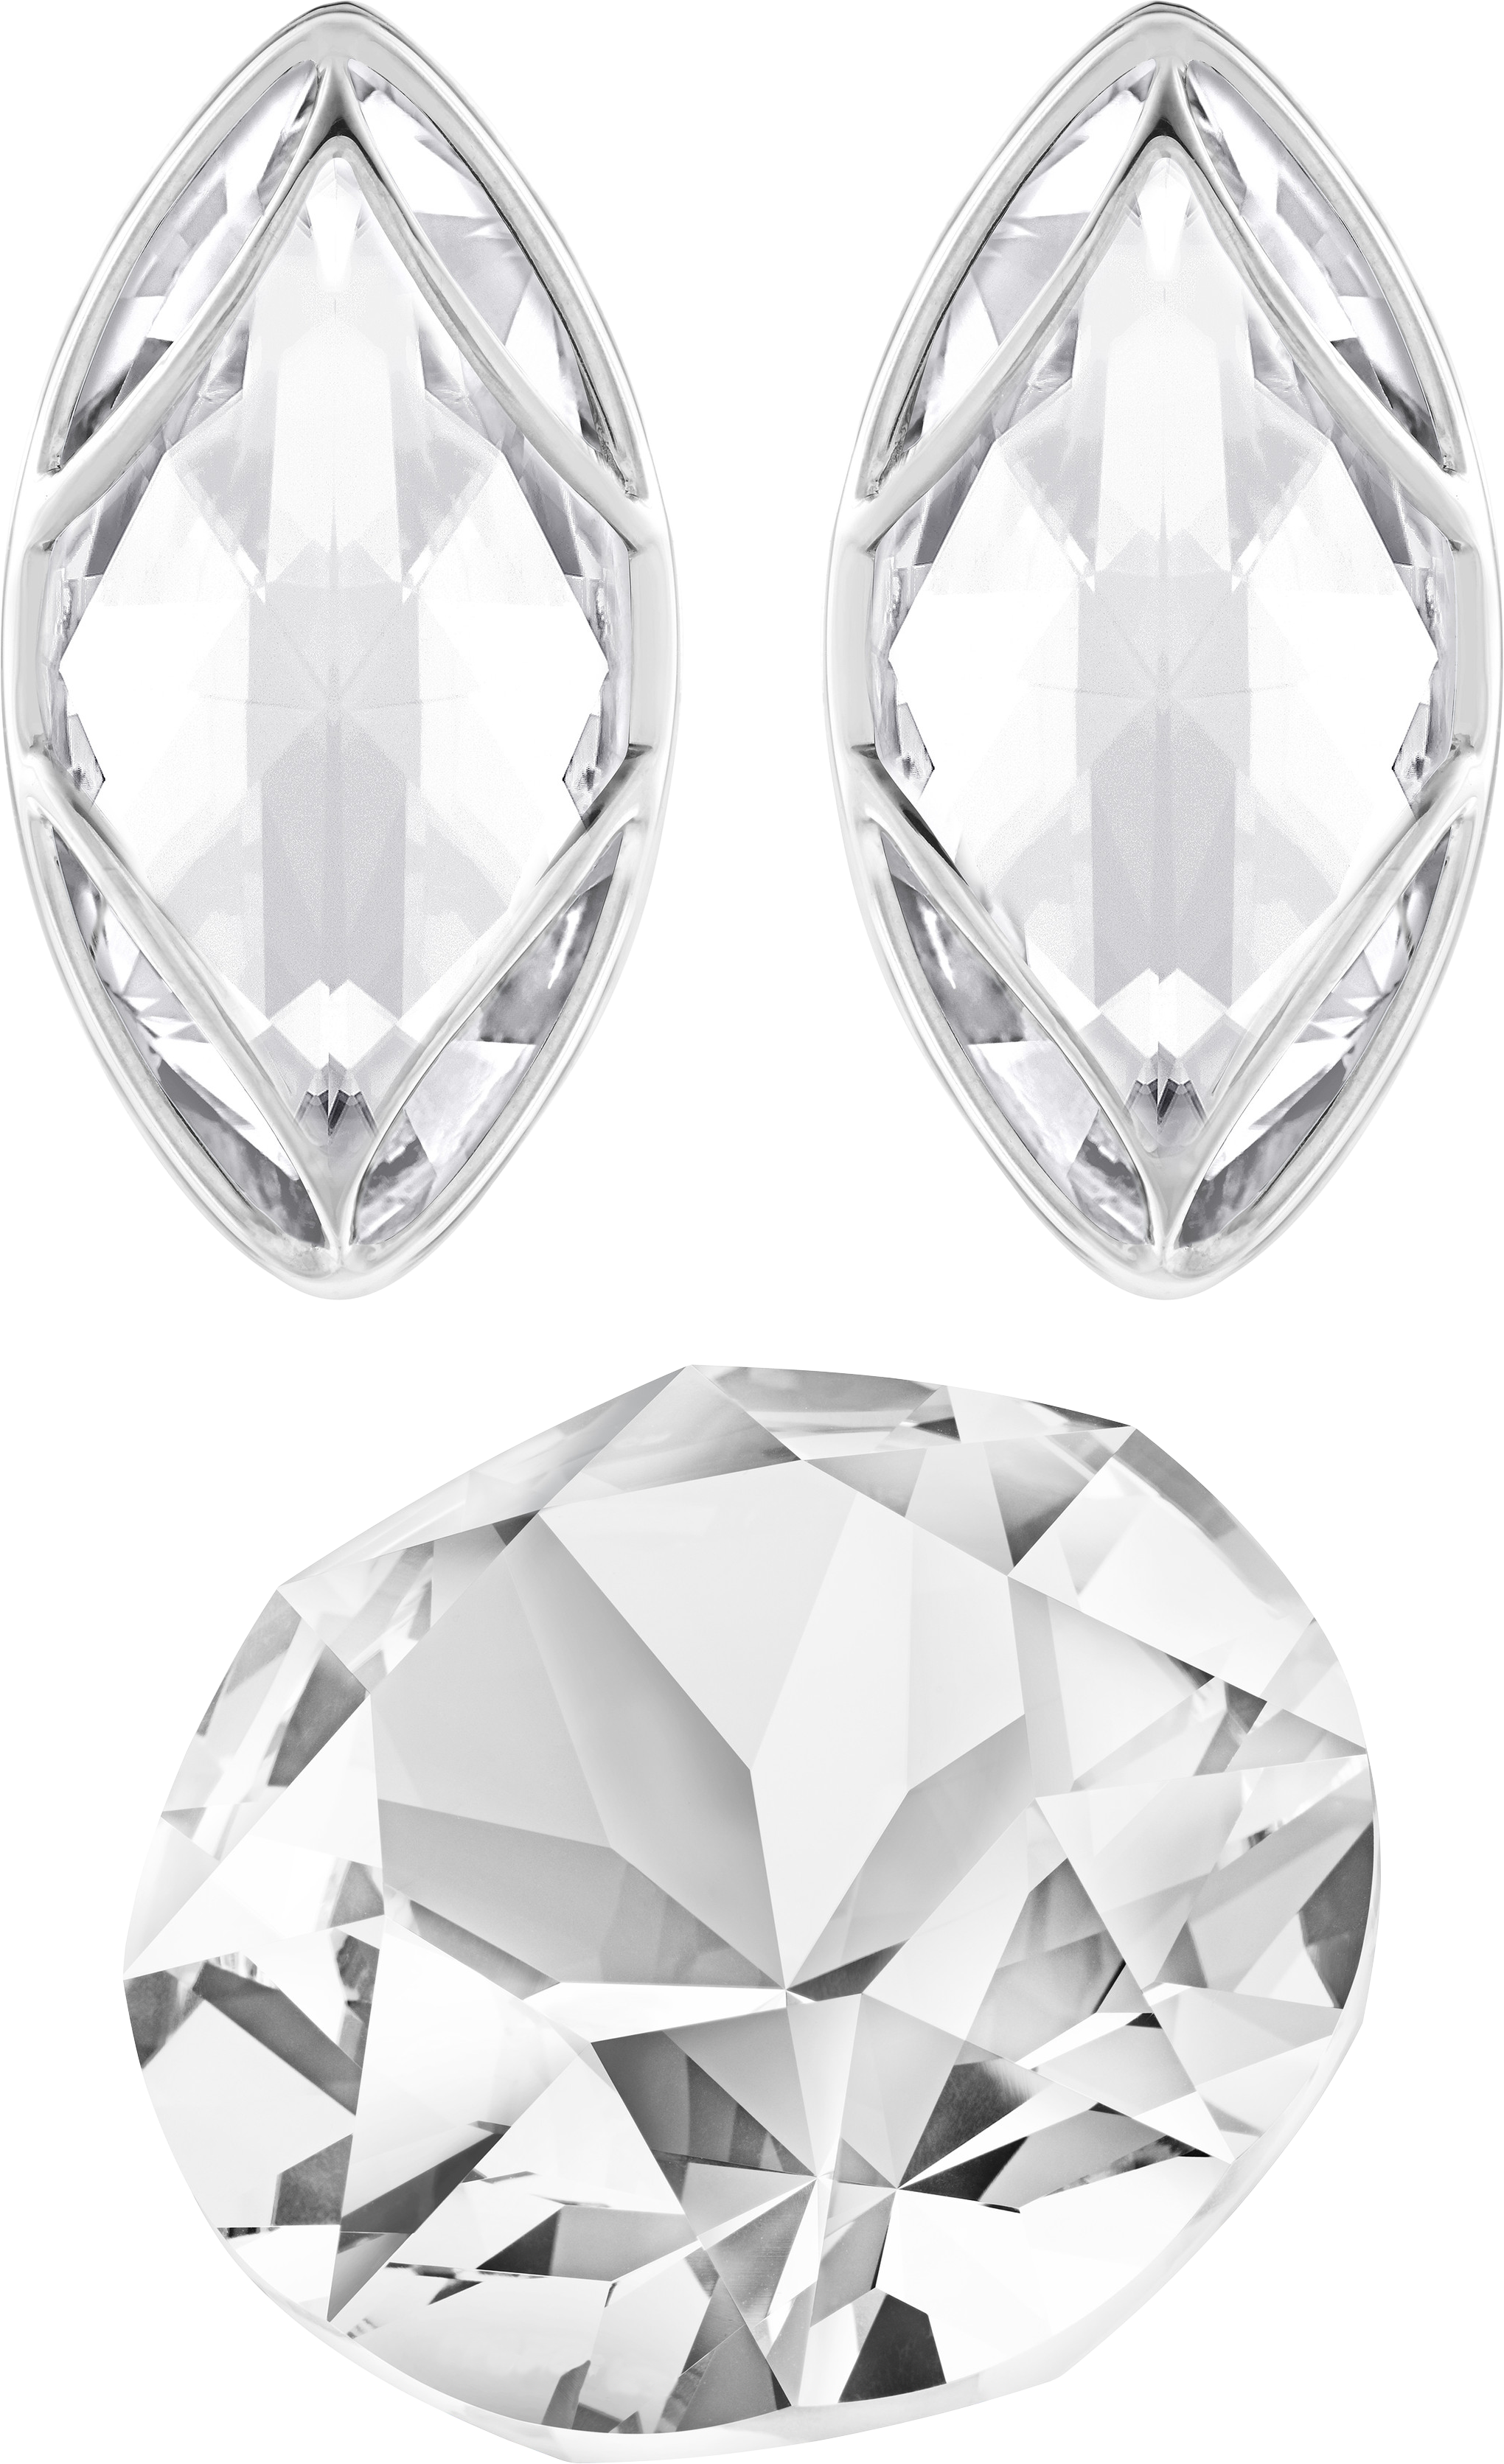 Tre diamanti